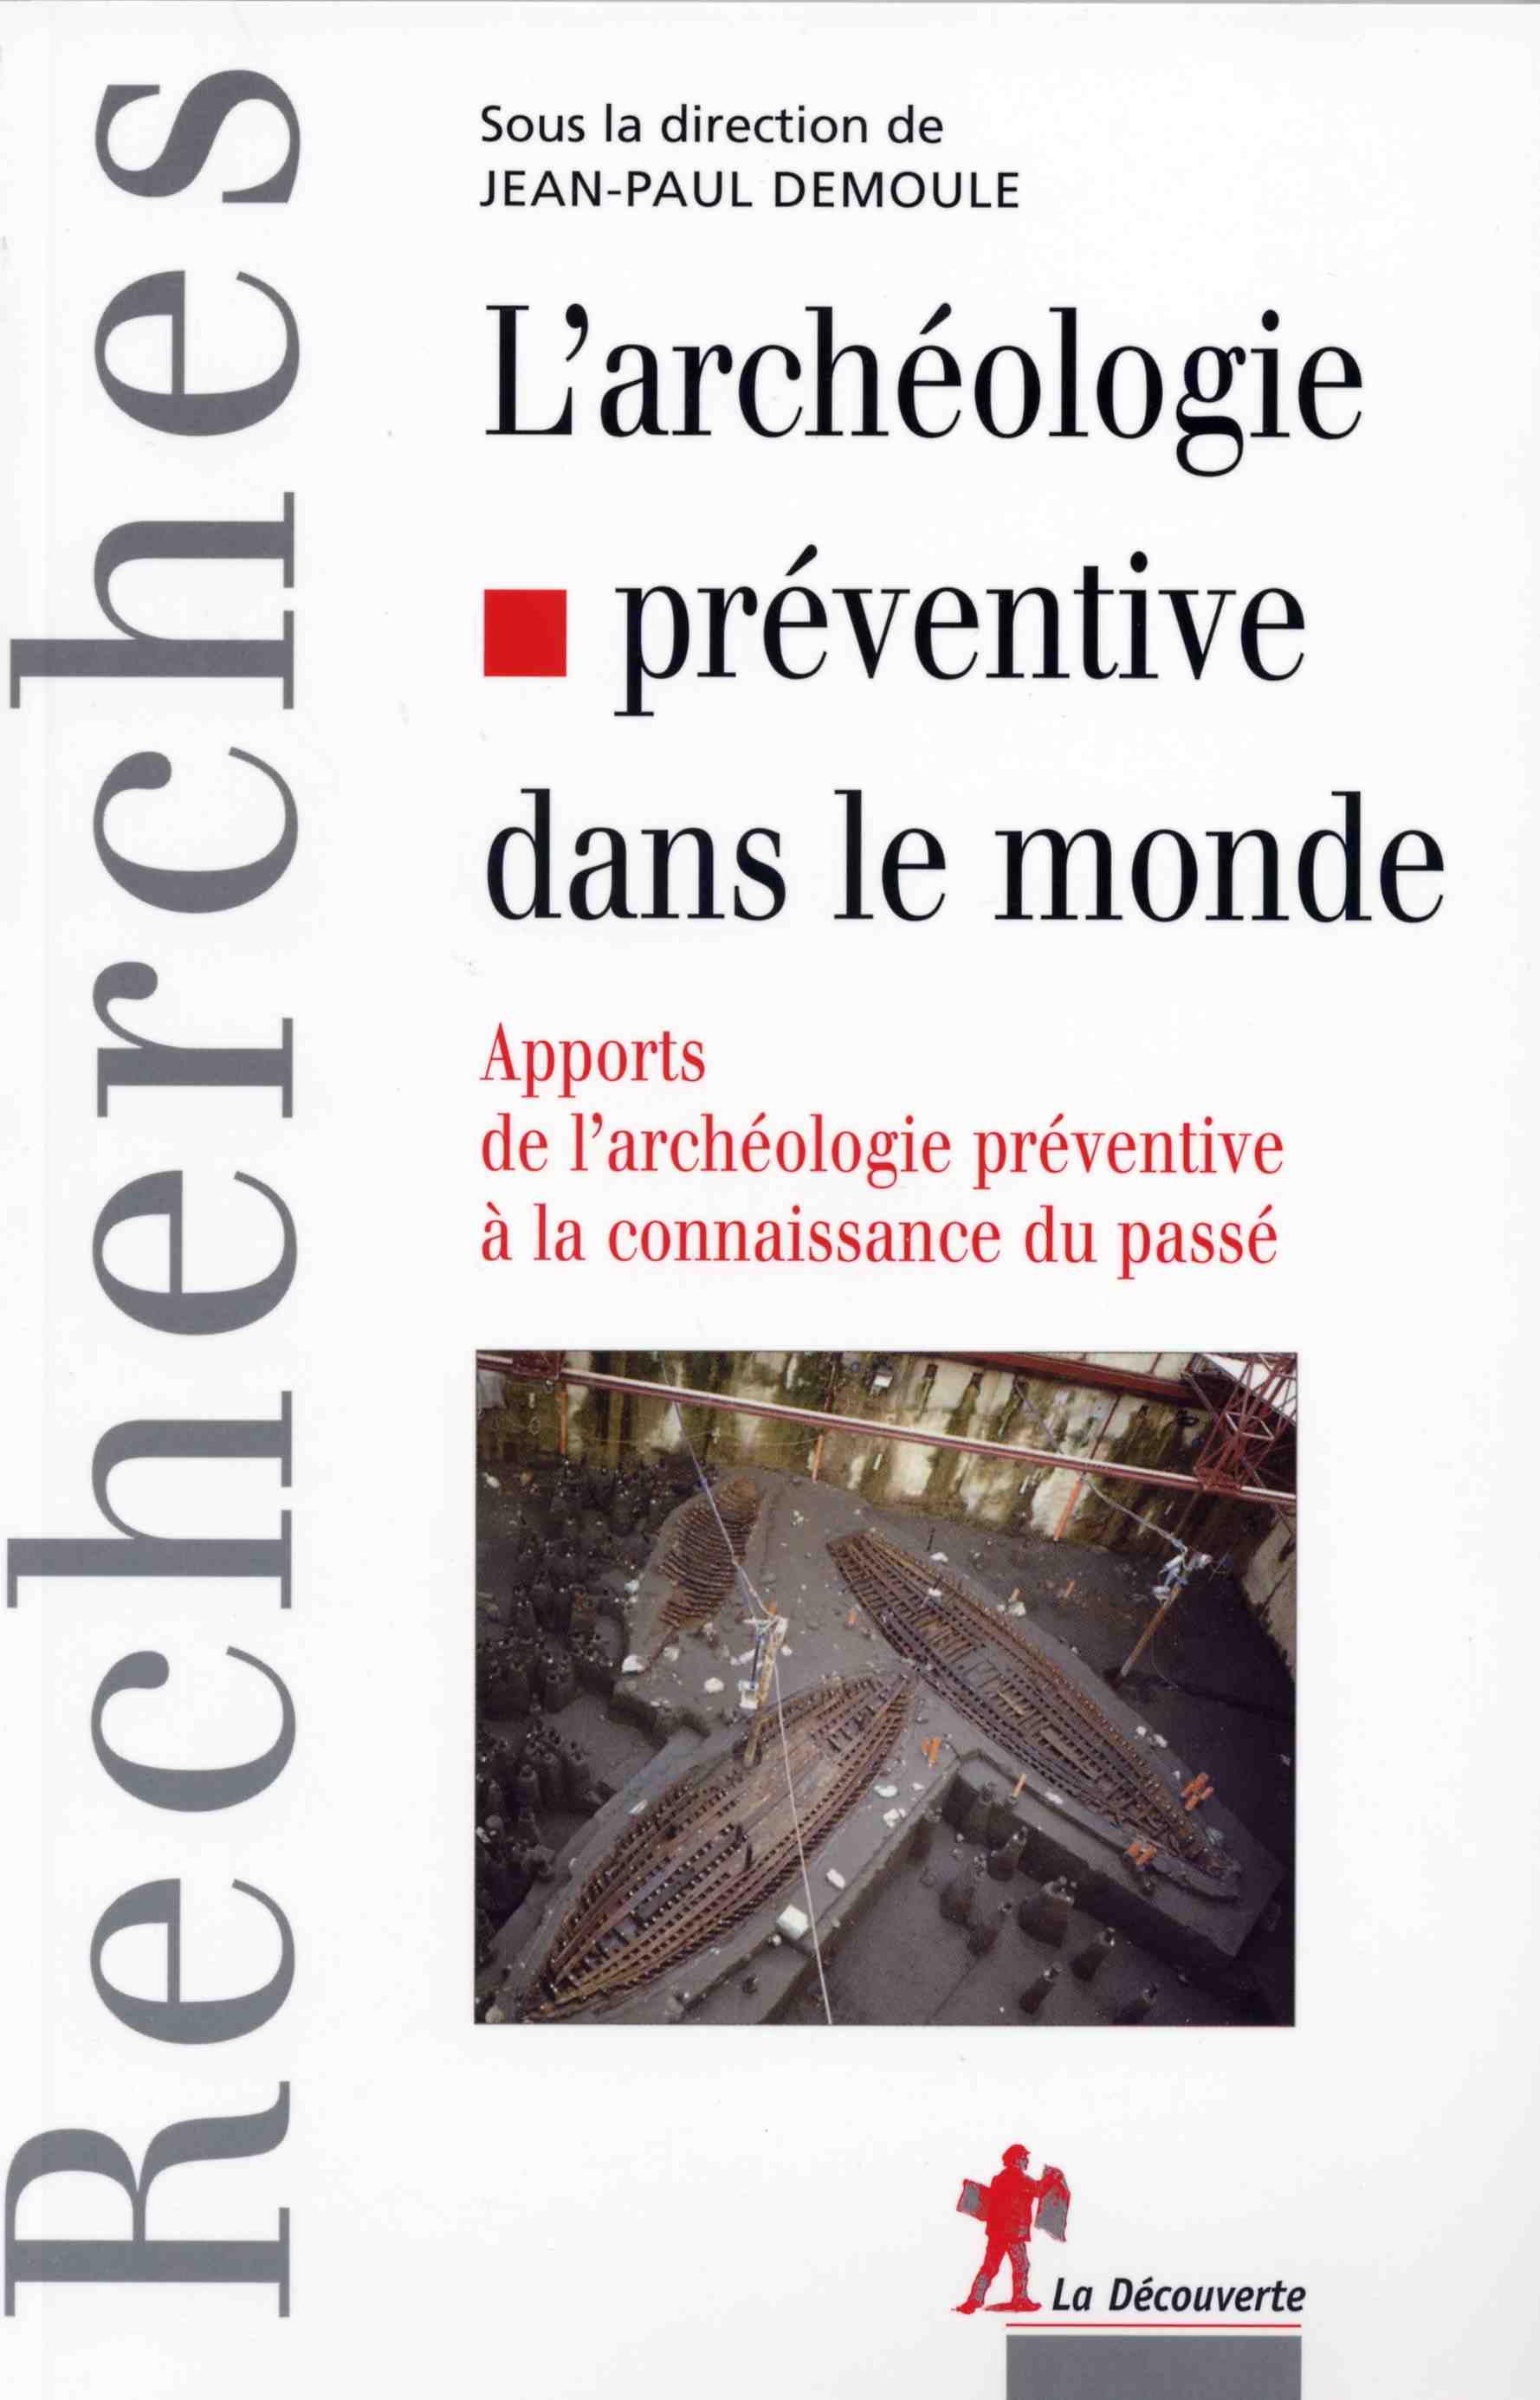 ÉPUISÉ - L'archéologie préventive dans le monde. Apports de l'archéologie préventive à la connaissance du passé, 2007, 288 p.